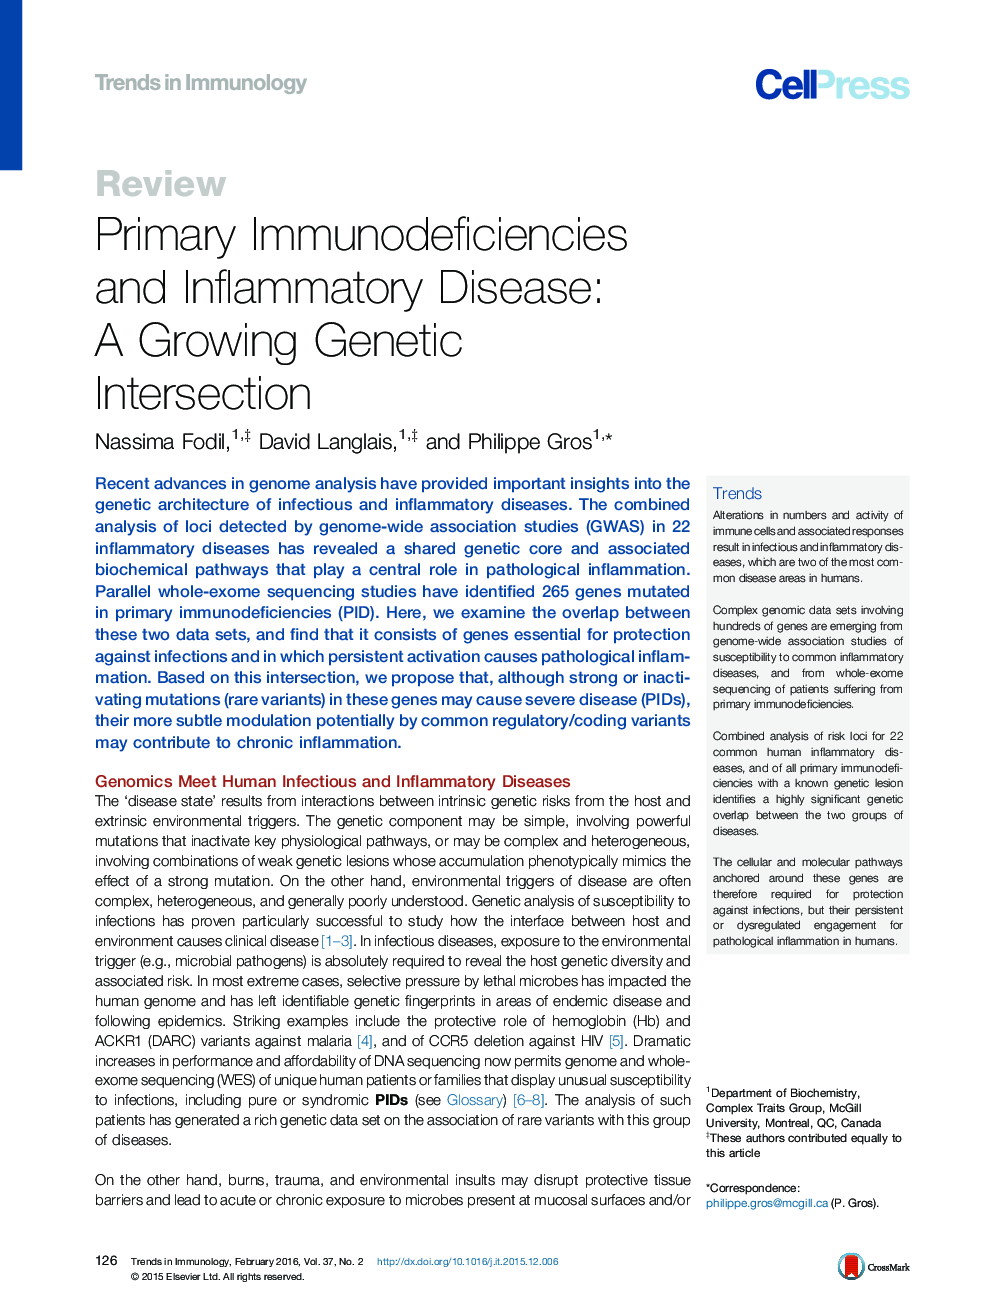 نقص سیستم ایمنی اولیه و بیماری التهابی: تقاطع ژنتیکی در حال رشد 